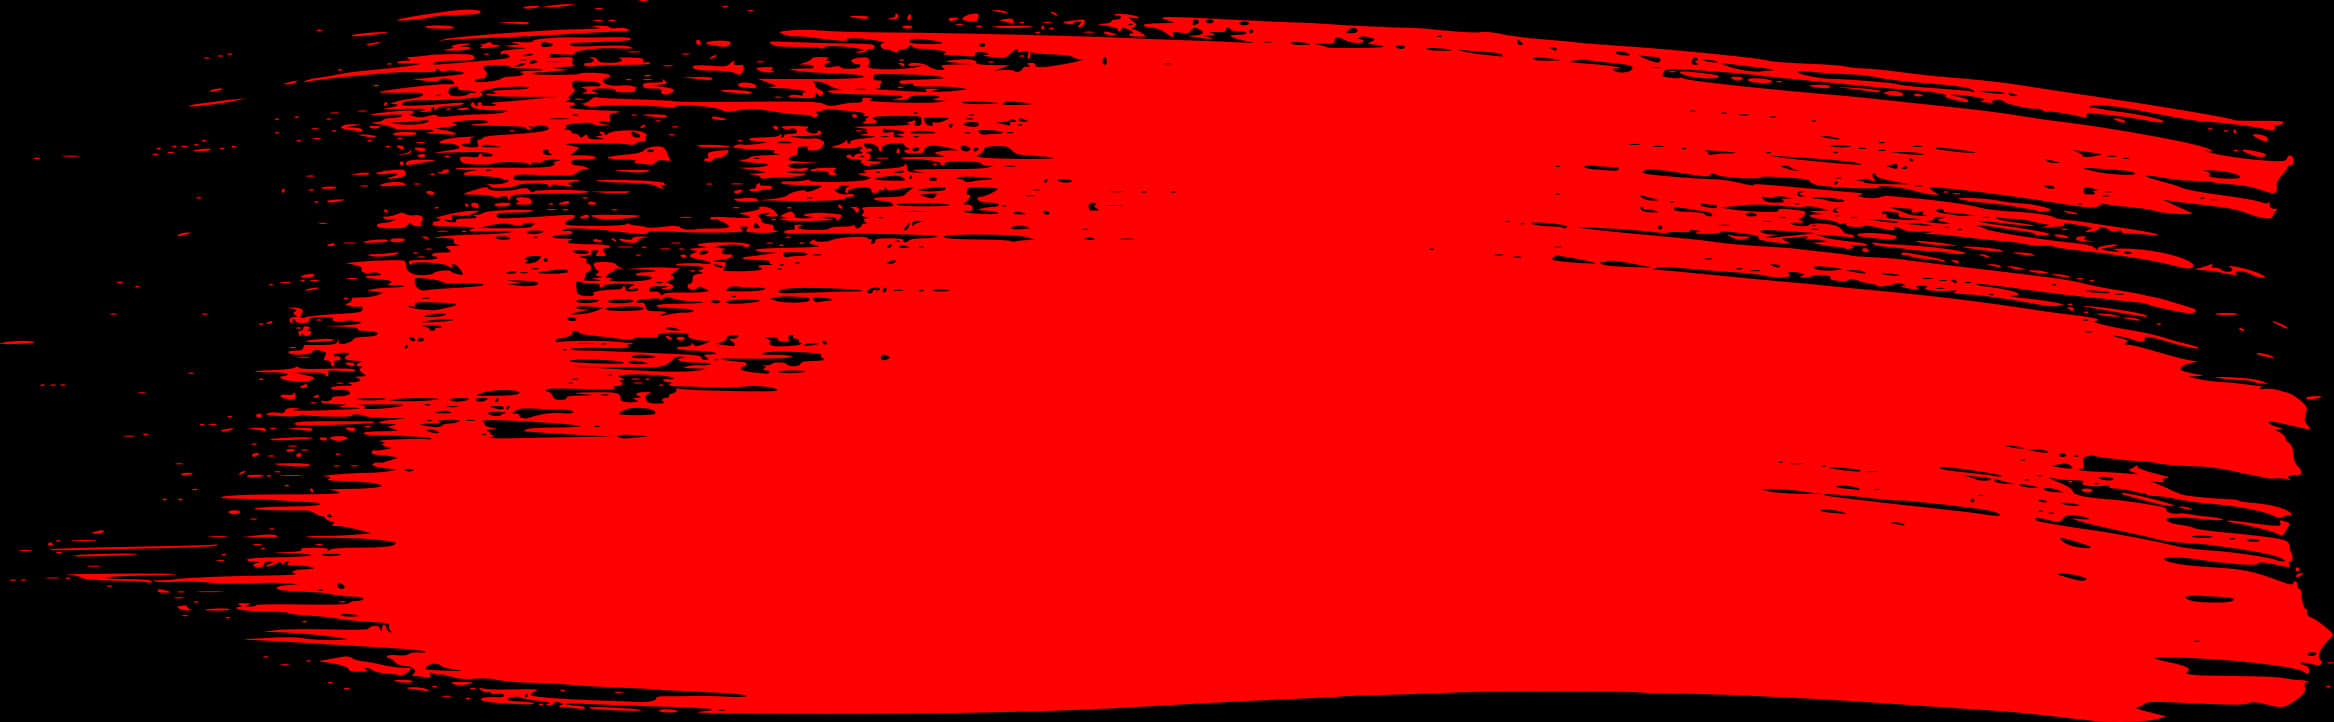 Vibrant Red Brush Strokeon Black Background.jpg